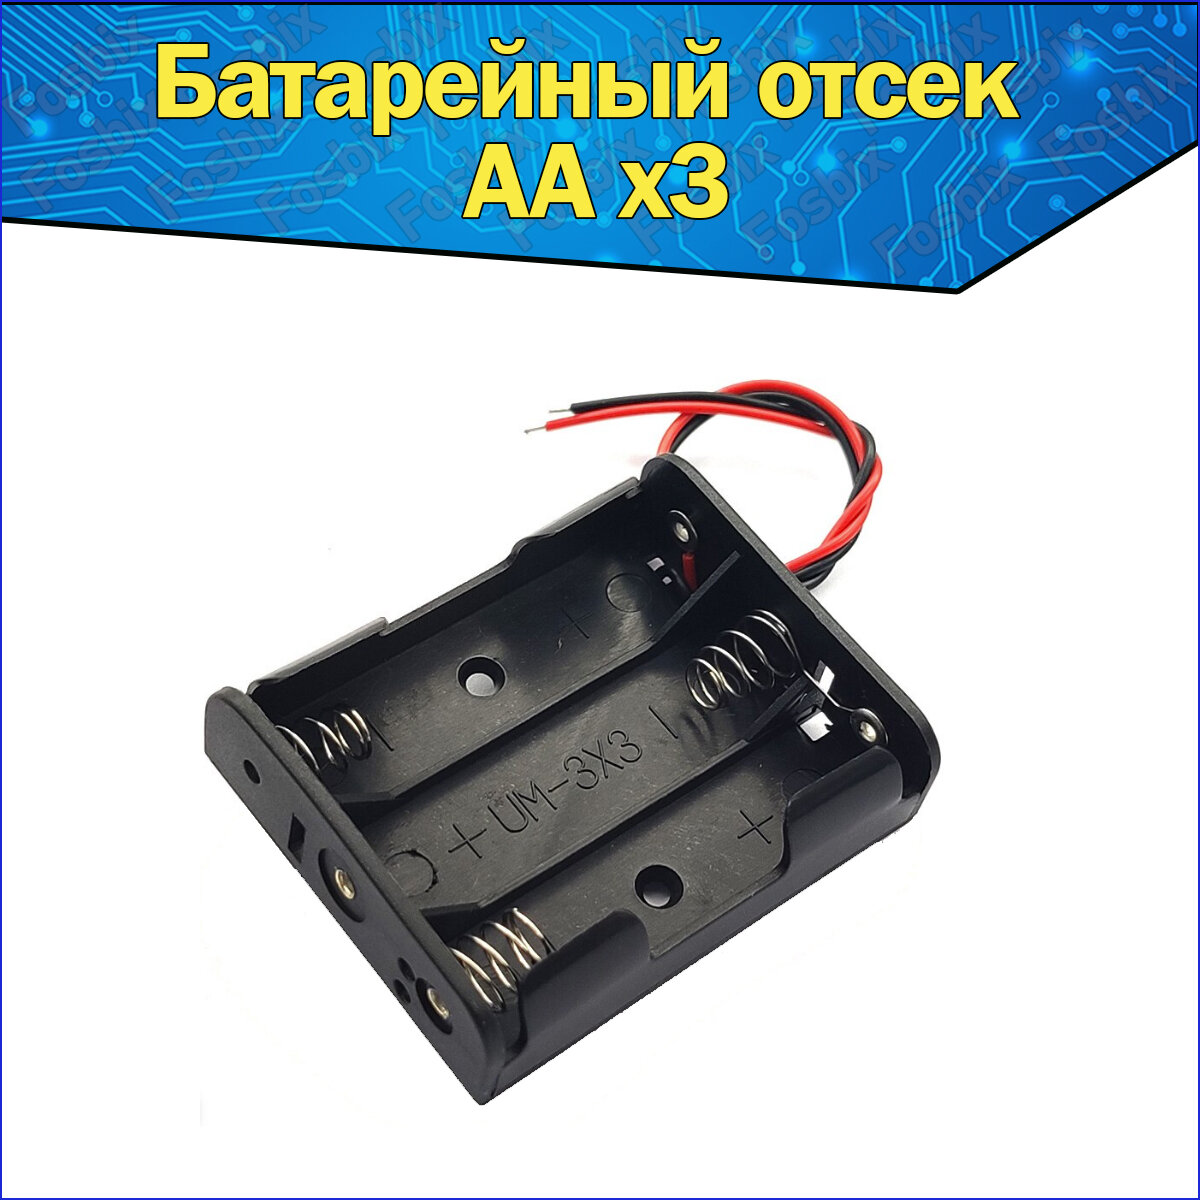 Батарейный отсек для аккумуляторов AA с проводами